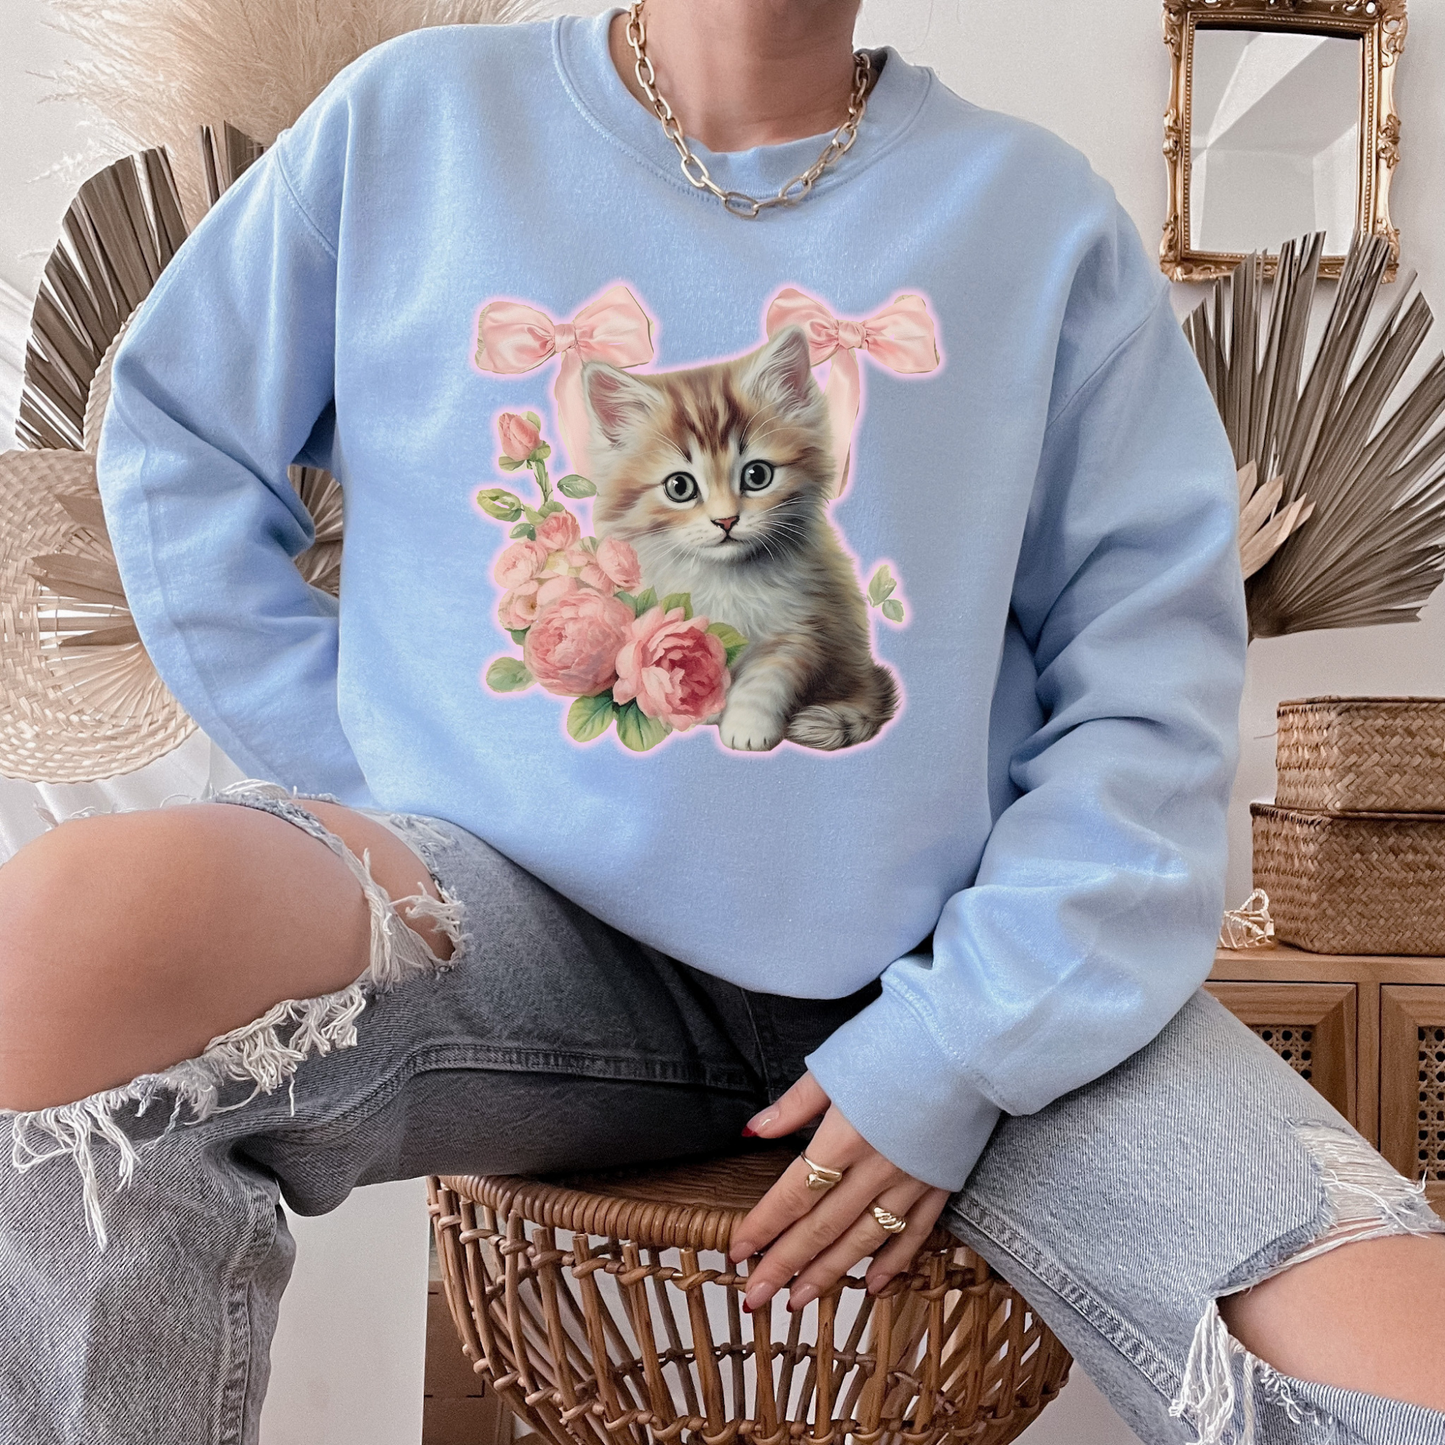 Coquette Kitten Crewneck Sweatshirt